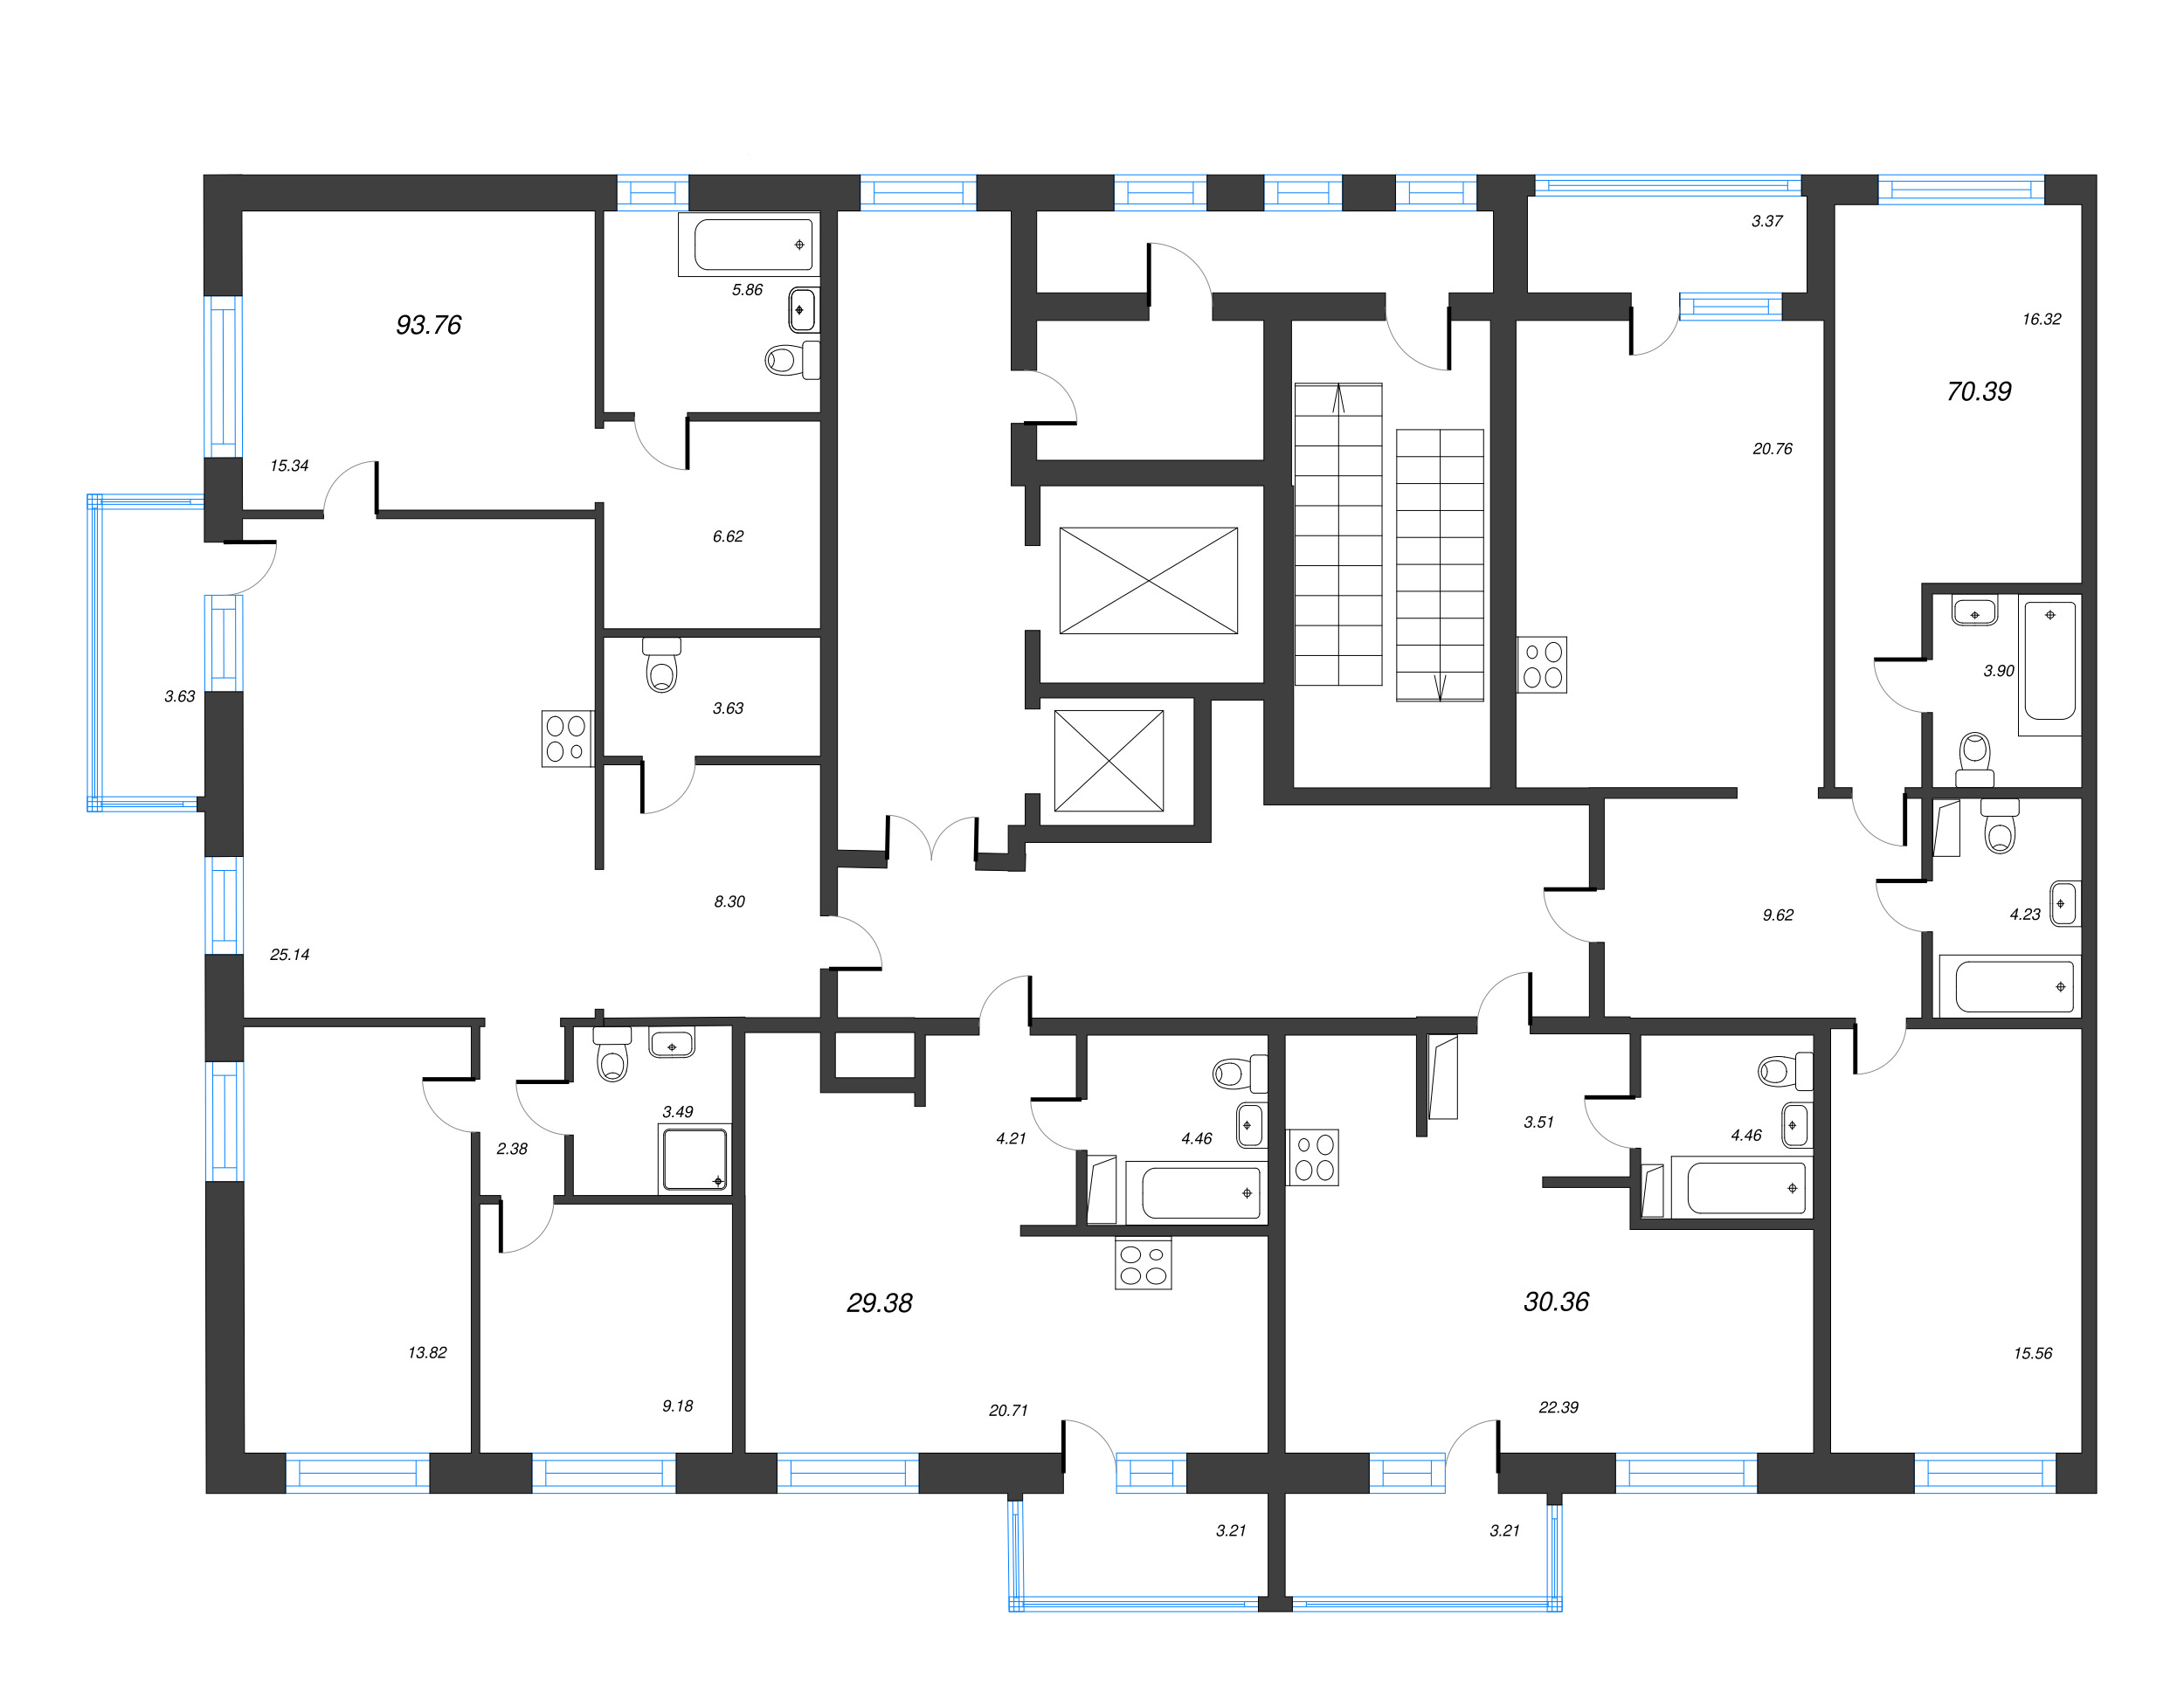 Квартира-студия, 30.36 м² в ЖК "Чёрная речка" - планировка этажа